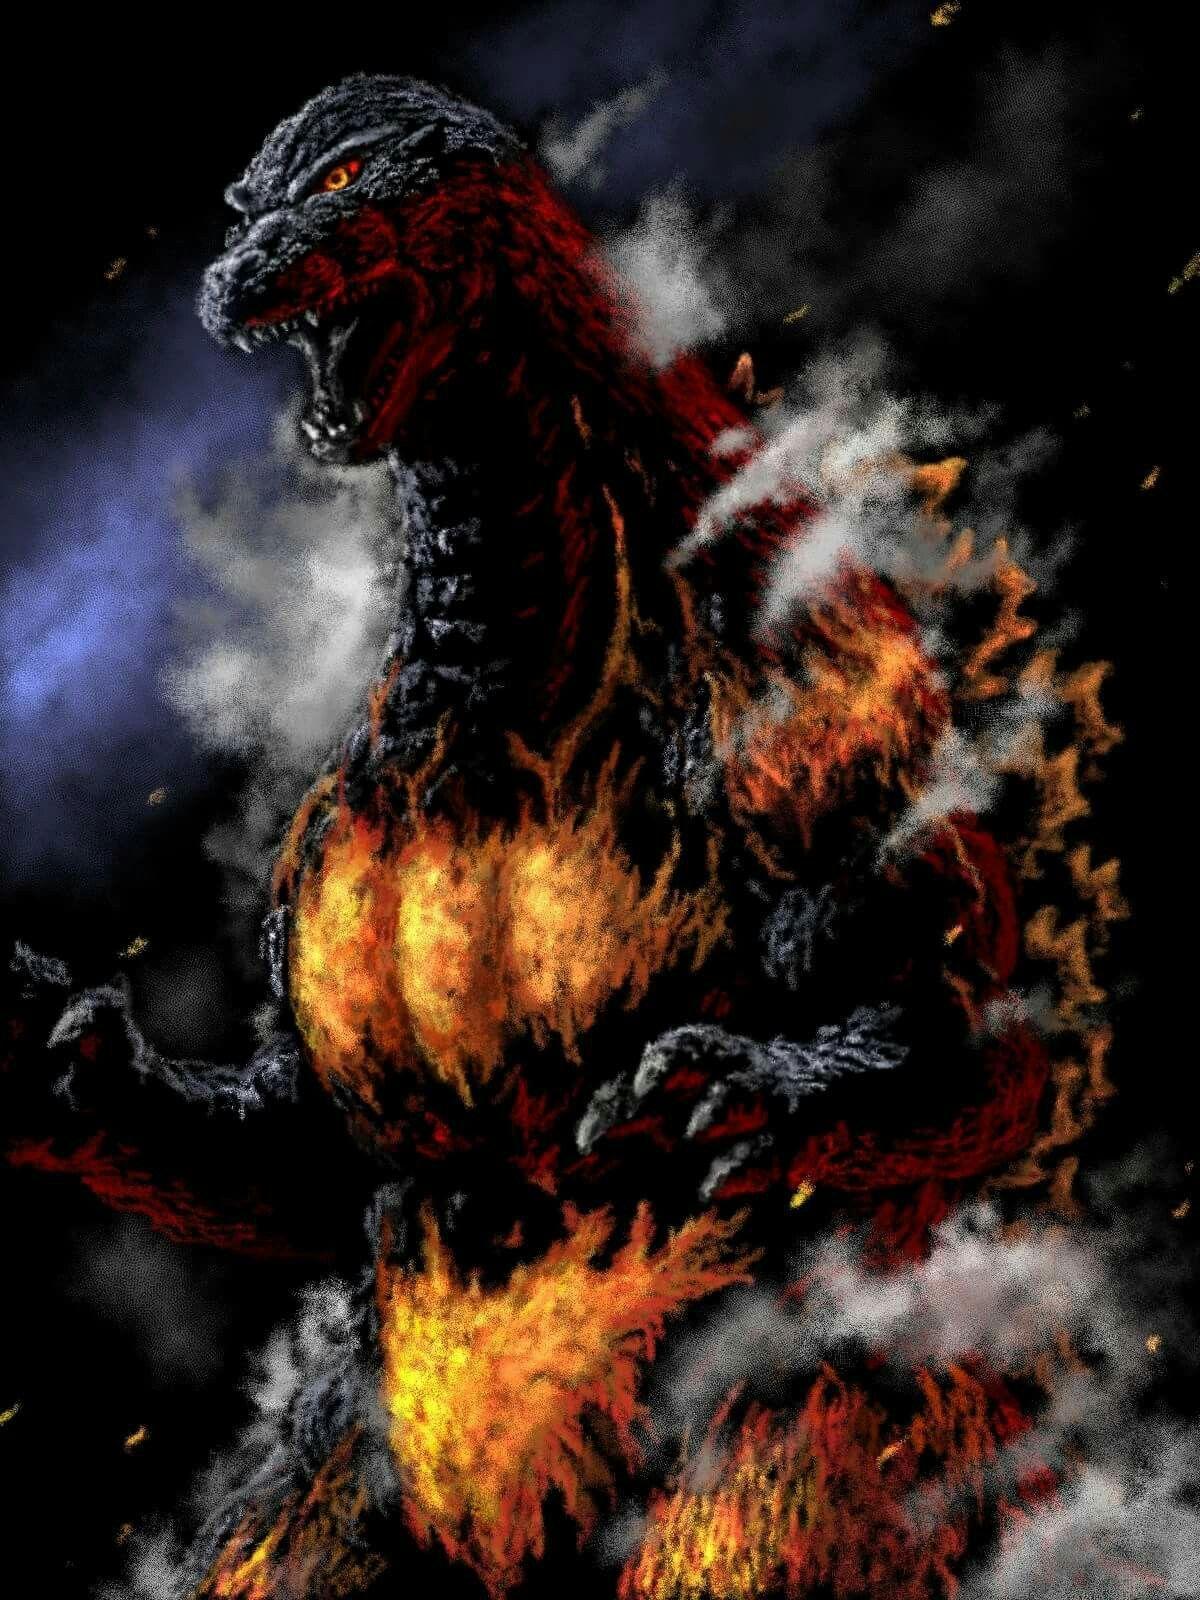 Burning Godzilla hình nền: Đắm chìm trong khích lệ và thách thức cùng với Burning Godzilla hình nền hấp dẫn. Hình nền siêu quái vật huyền thoại này sẽ giúp cho màn hình của bạn trở nên rực rỡ và đầy tính năng lực. Hãy cùng tận hưởng những thước phim đầy thách thức cùng với Burning Godzilla hình nền.